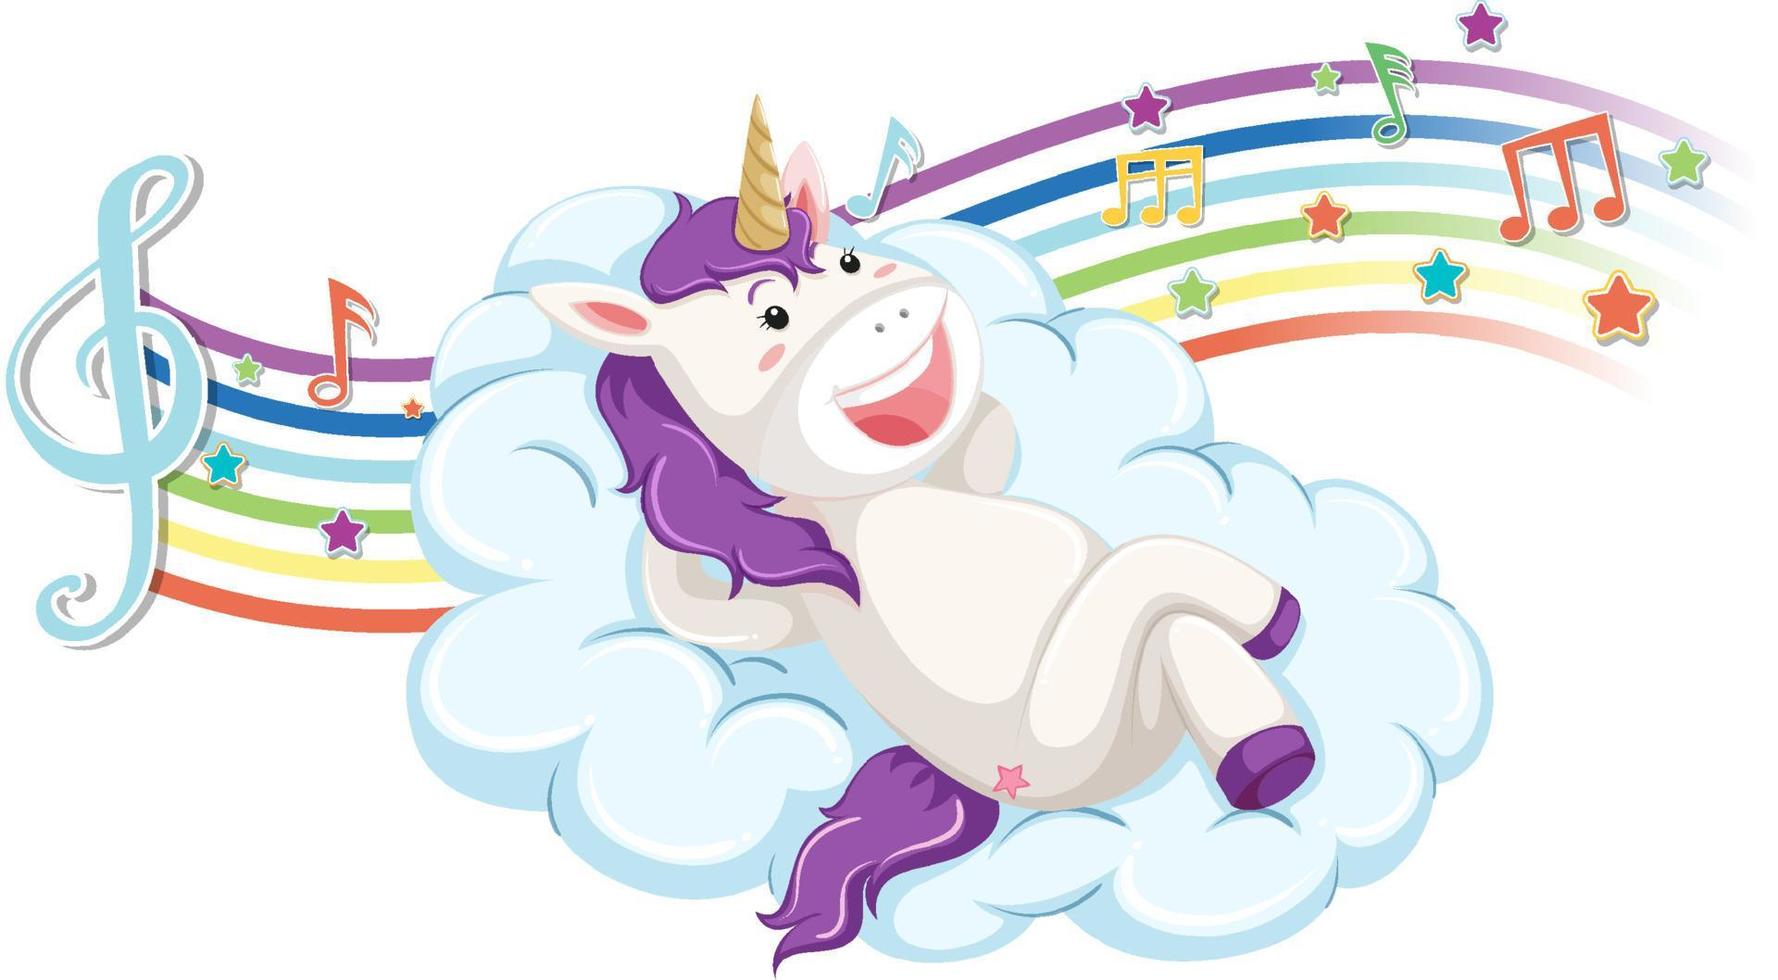 simpatico unicorno in piedi sulla nuvola con simboli di melodia sull'arcobaleno vettore